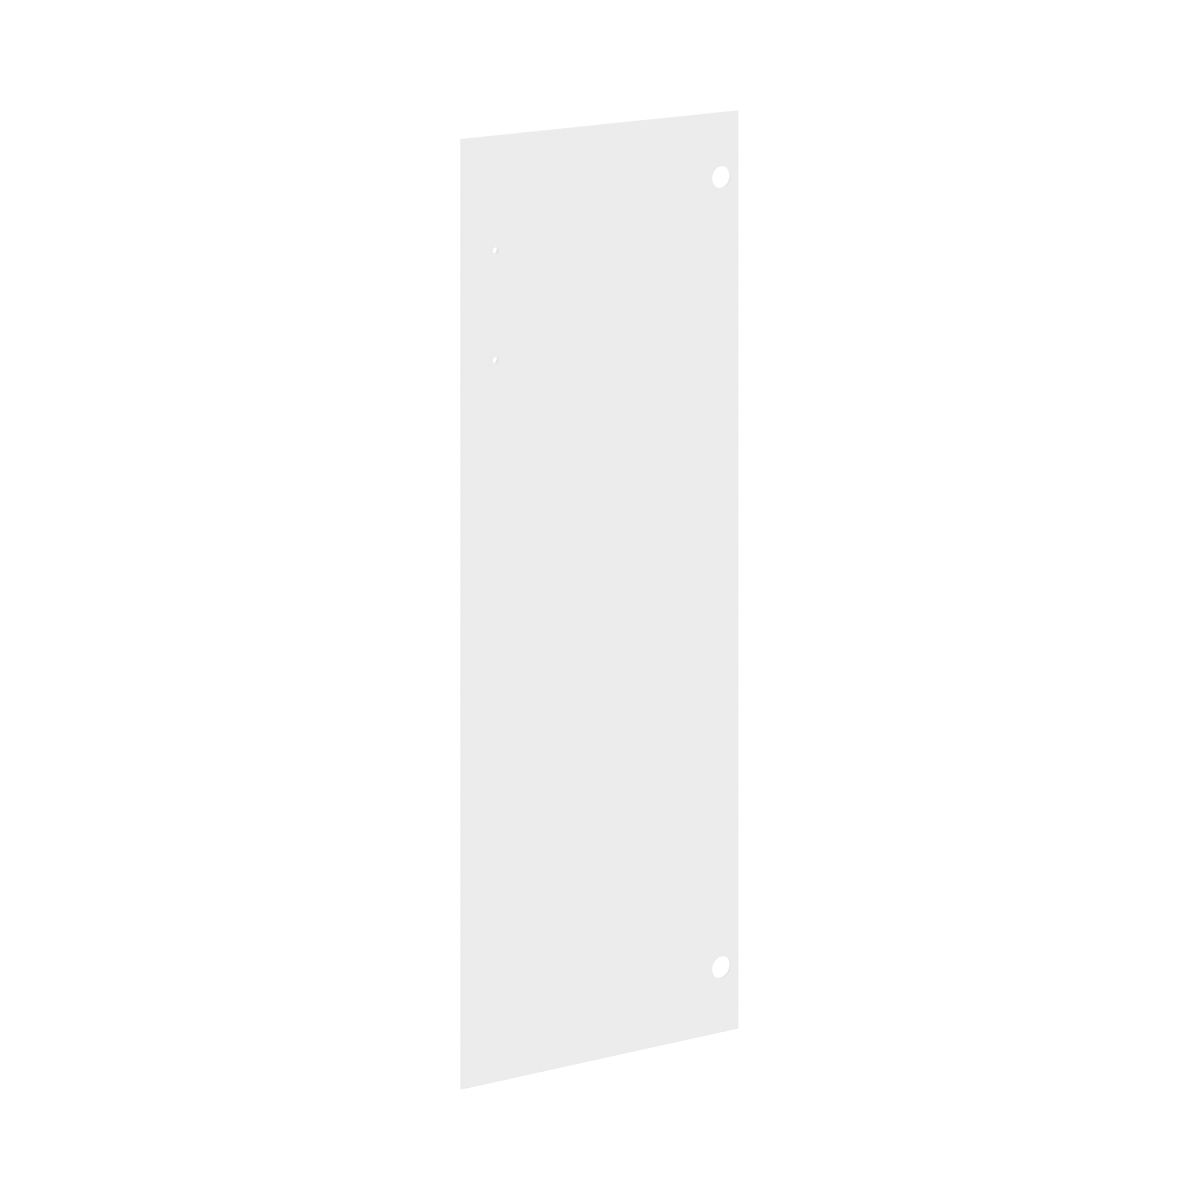 Дверь средняя 1109х380х4 мм (стекло)